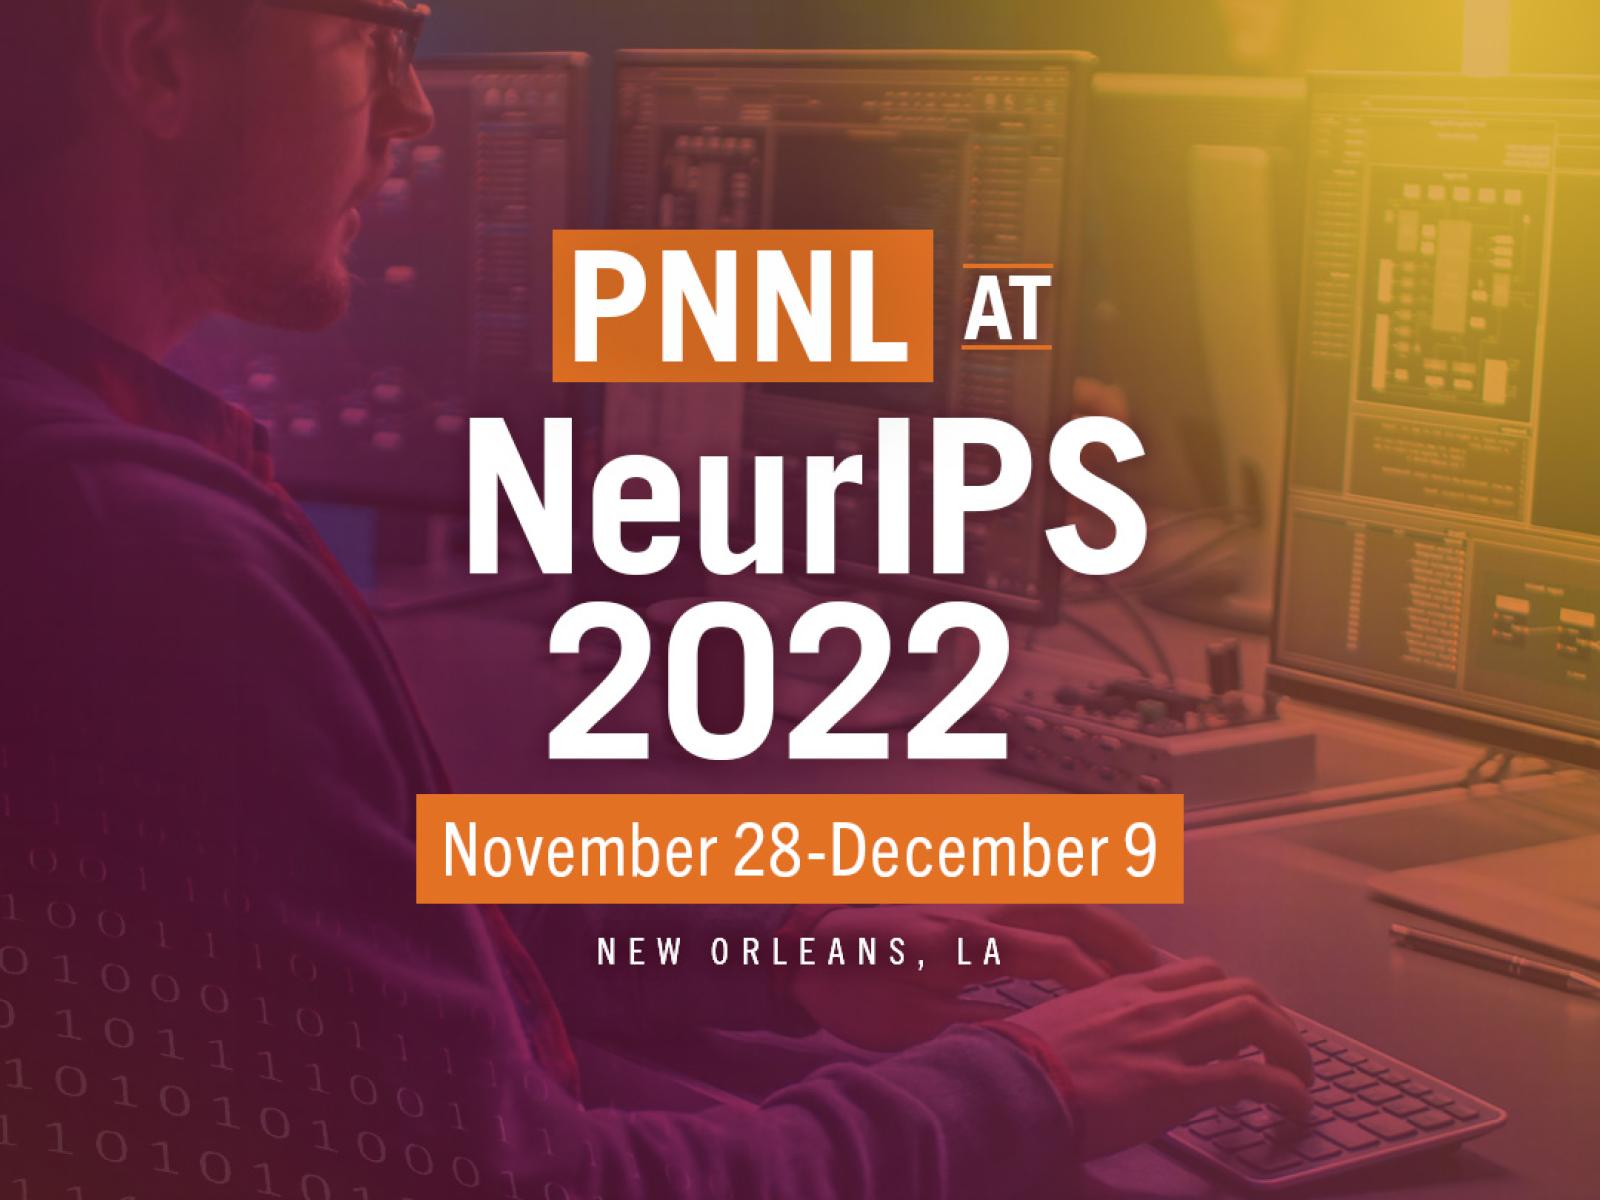 PNNL @ NeurIPS 2022